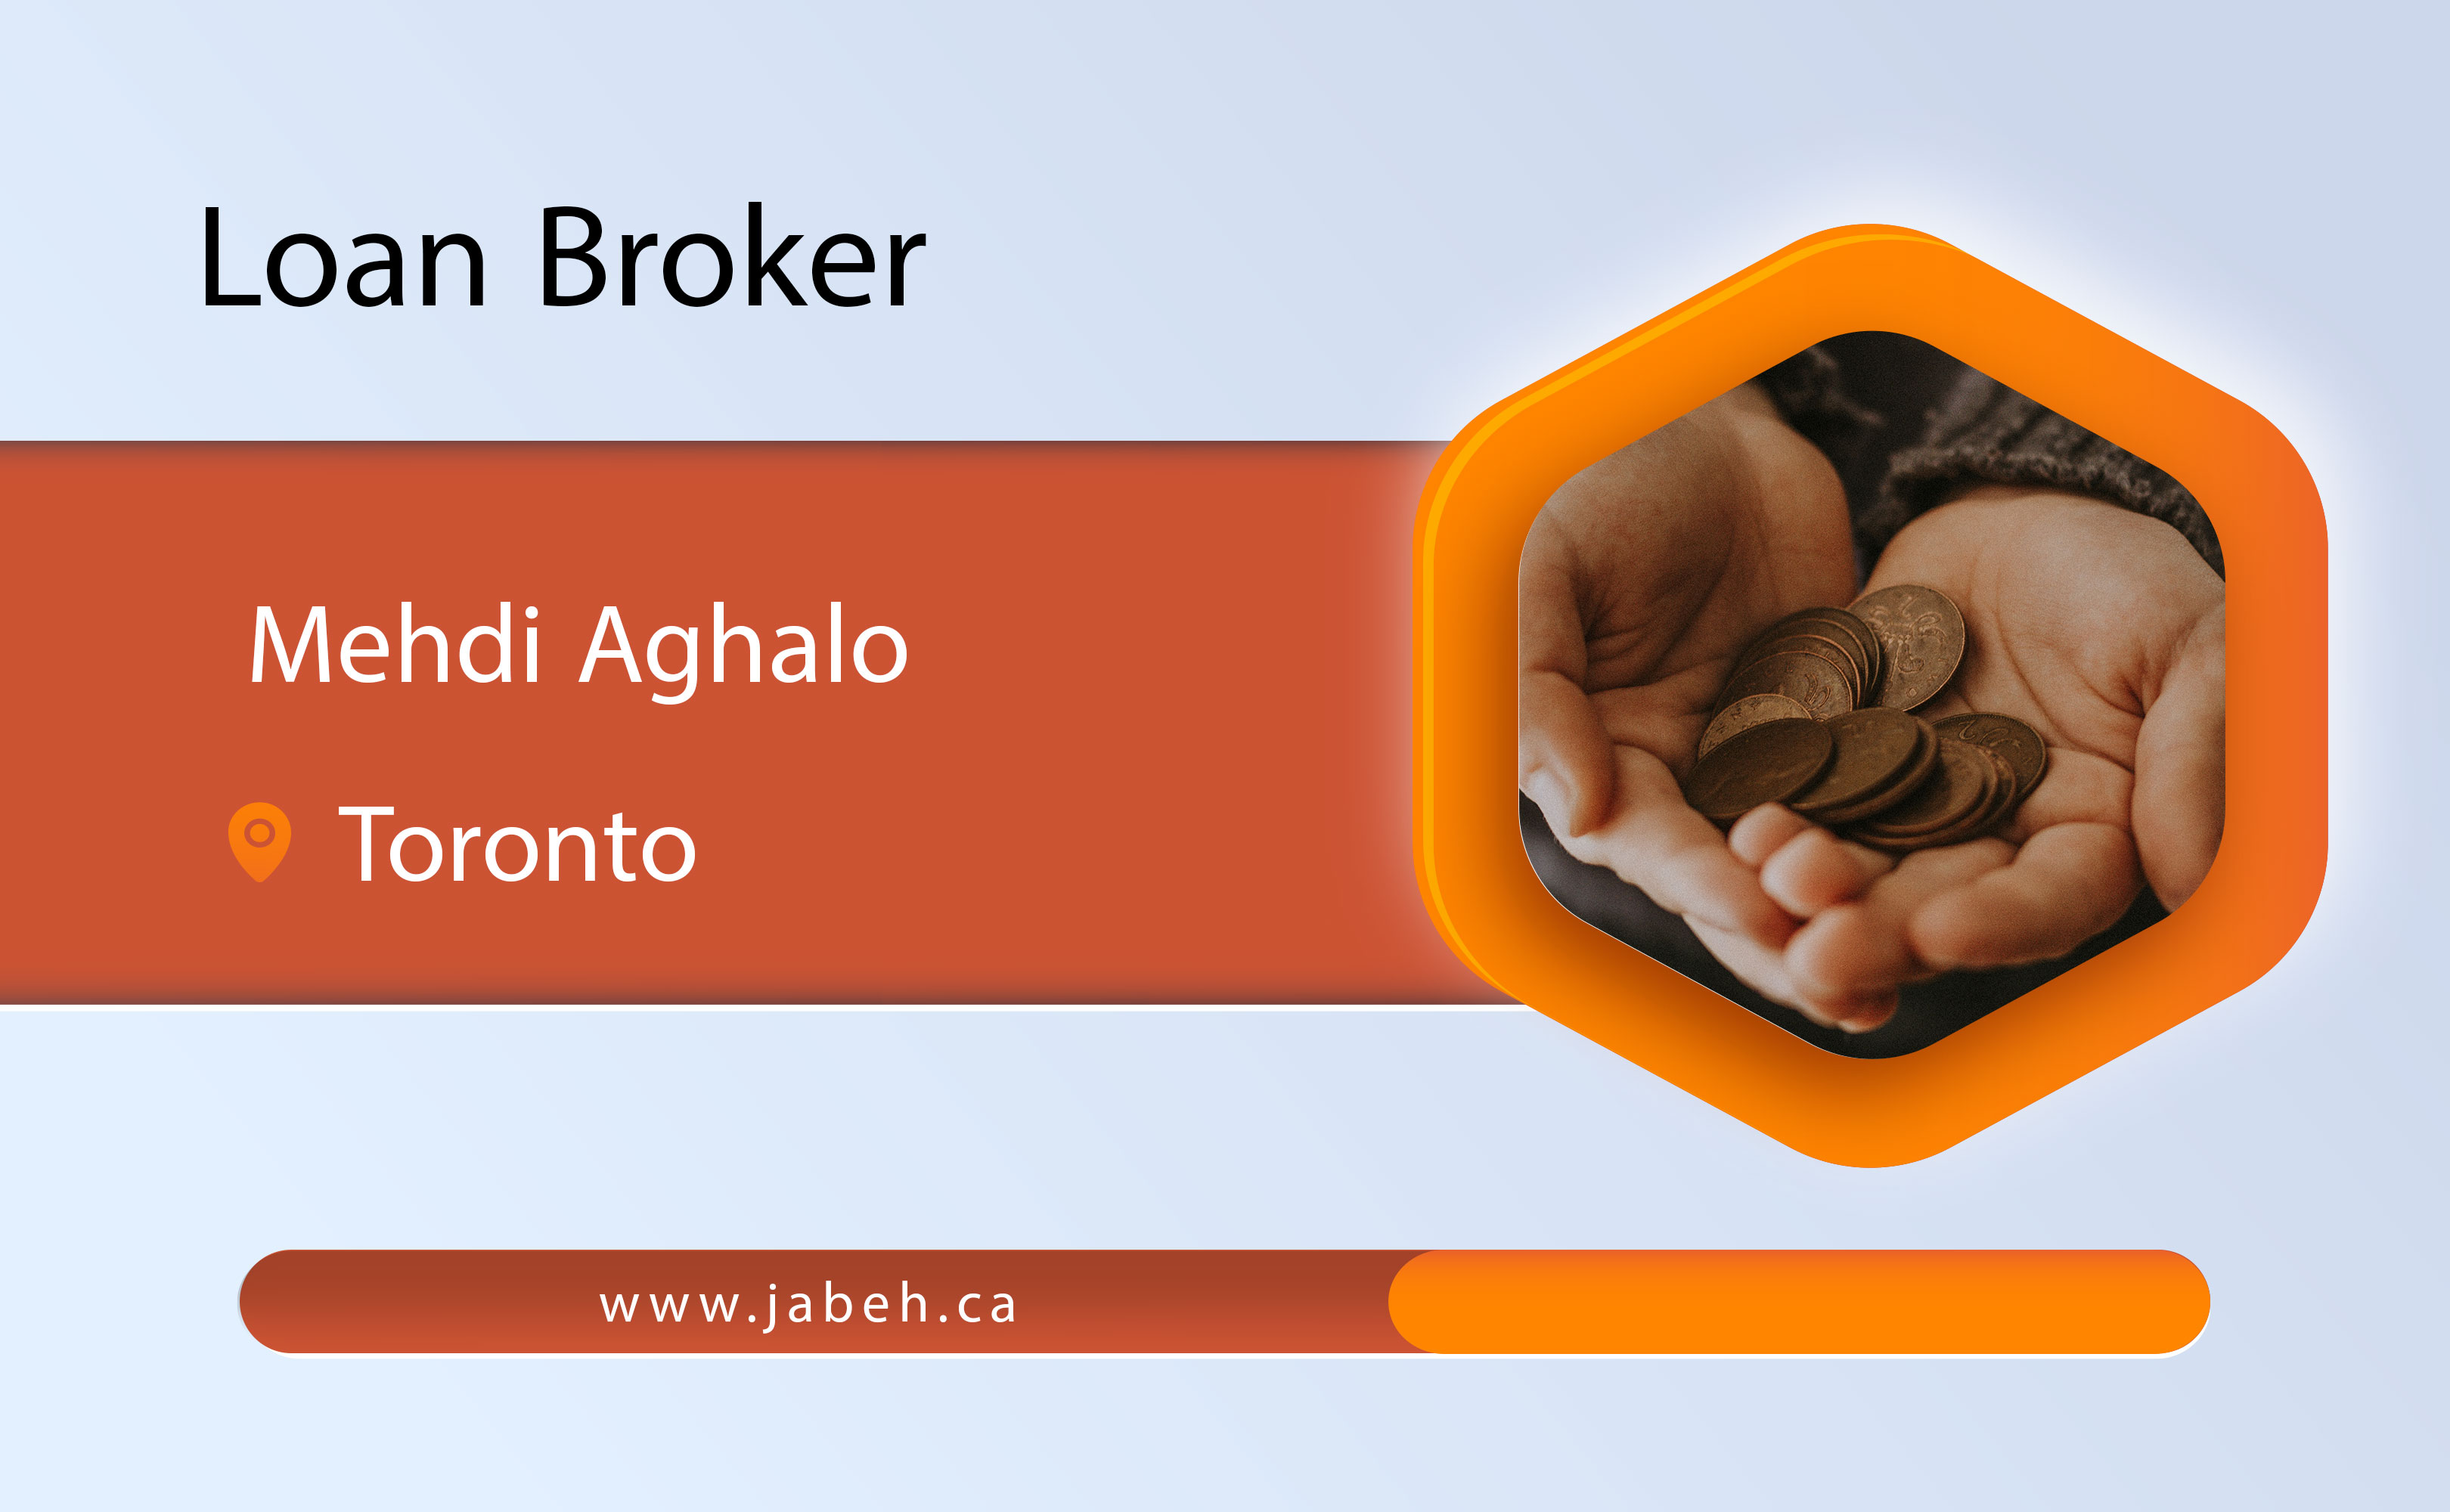 Iranian loan broker Mehdi Aghalou in Toronto